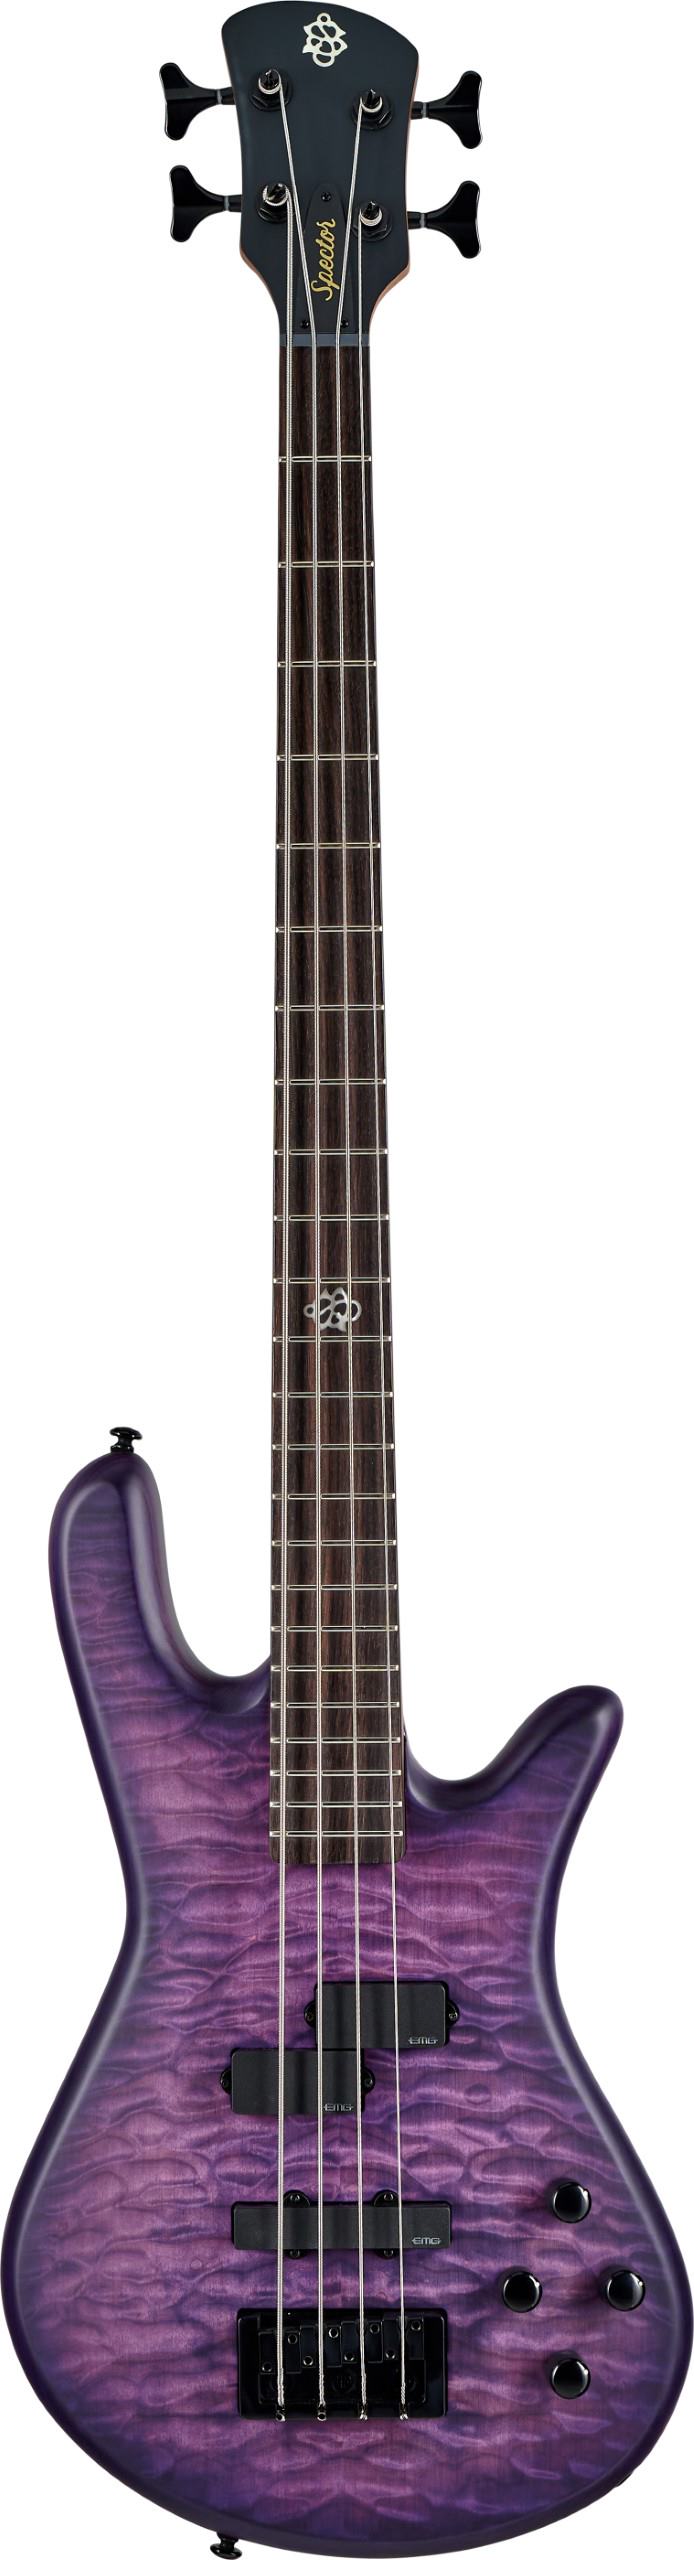 Spector nspulse4uvm ns Pulse Electric Bass w / EMG Pickups - Ultra Violet Matte